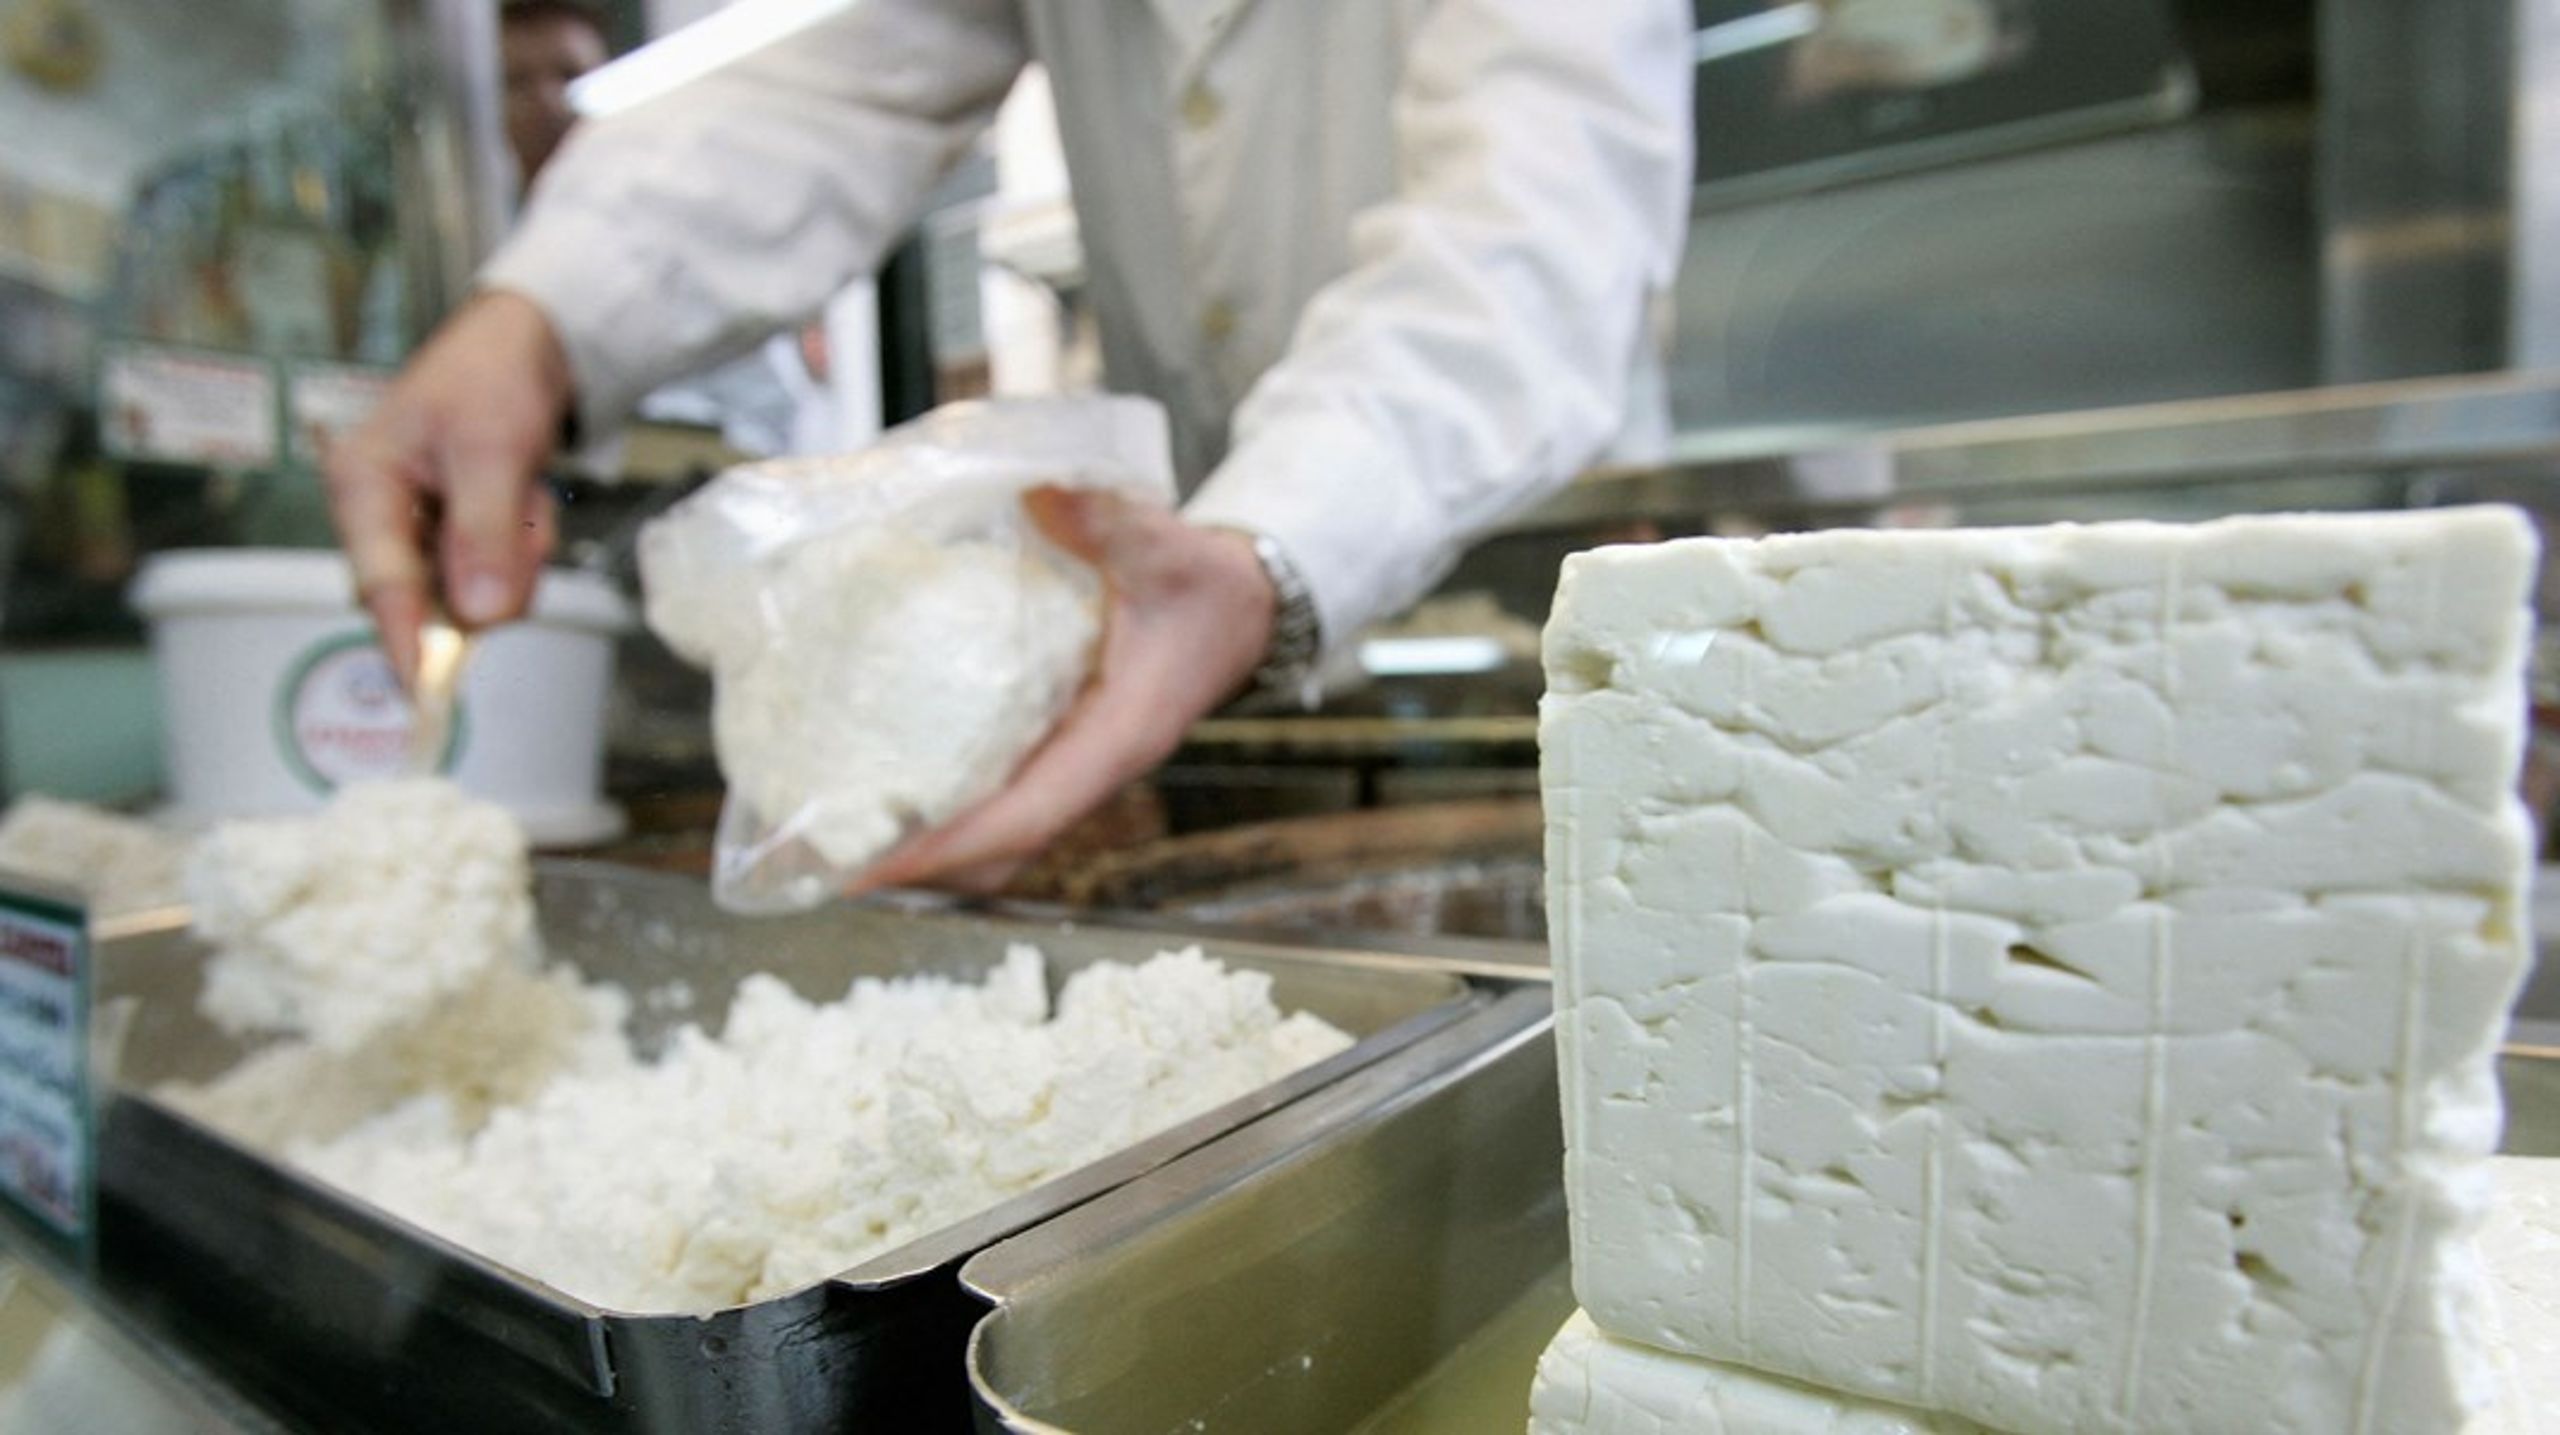 EU-Domstolens generaladvokat udtalte 17. marts kritik af Danmark, fordi danske osteproducenter sælger hvid ost under varebetegnelsen 'feta' uden for EU's grænser. Det sker, efter EU-Kommissionen har anklaget Danmark for traktatbrud.